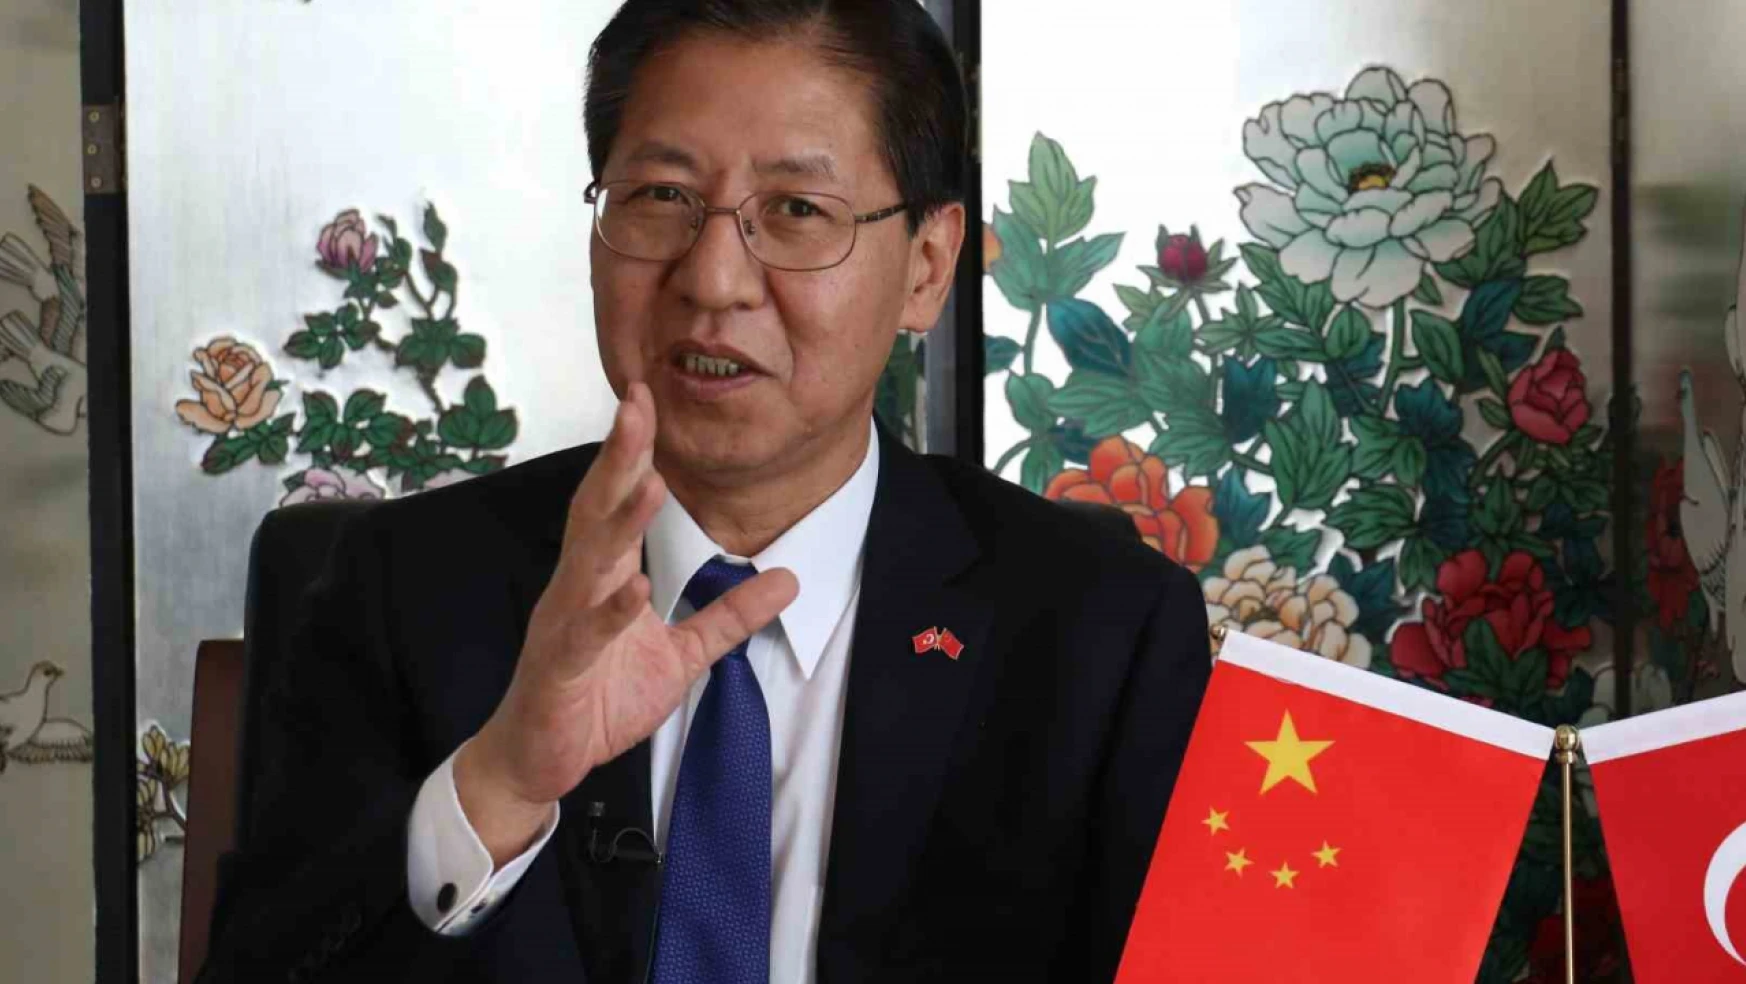 Çin'in Ankara Büyükelçisi Shaobin: Dış güçlerin Türkiye'nin iç işlerine karışmasına karşı çıkıyoruz